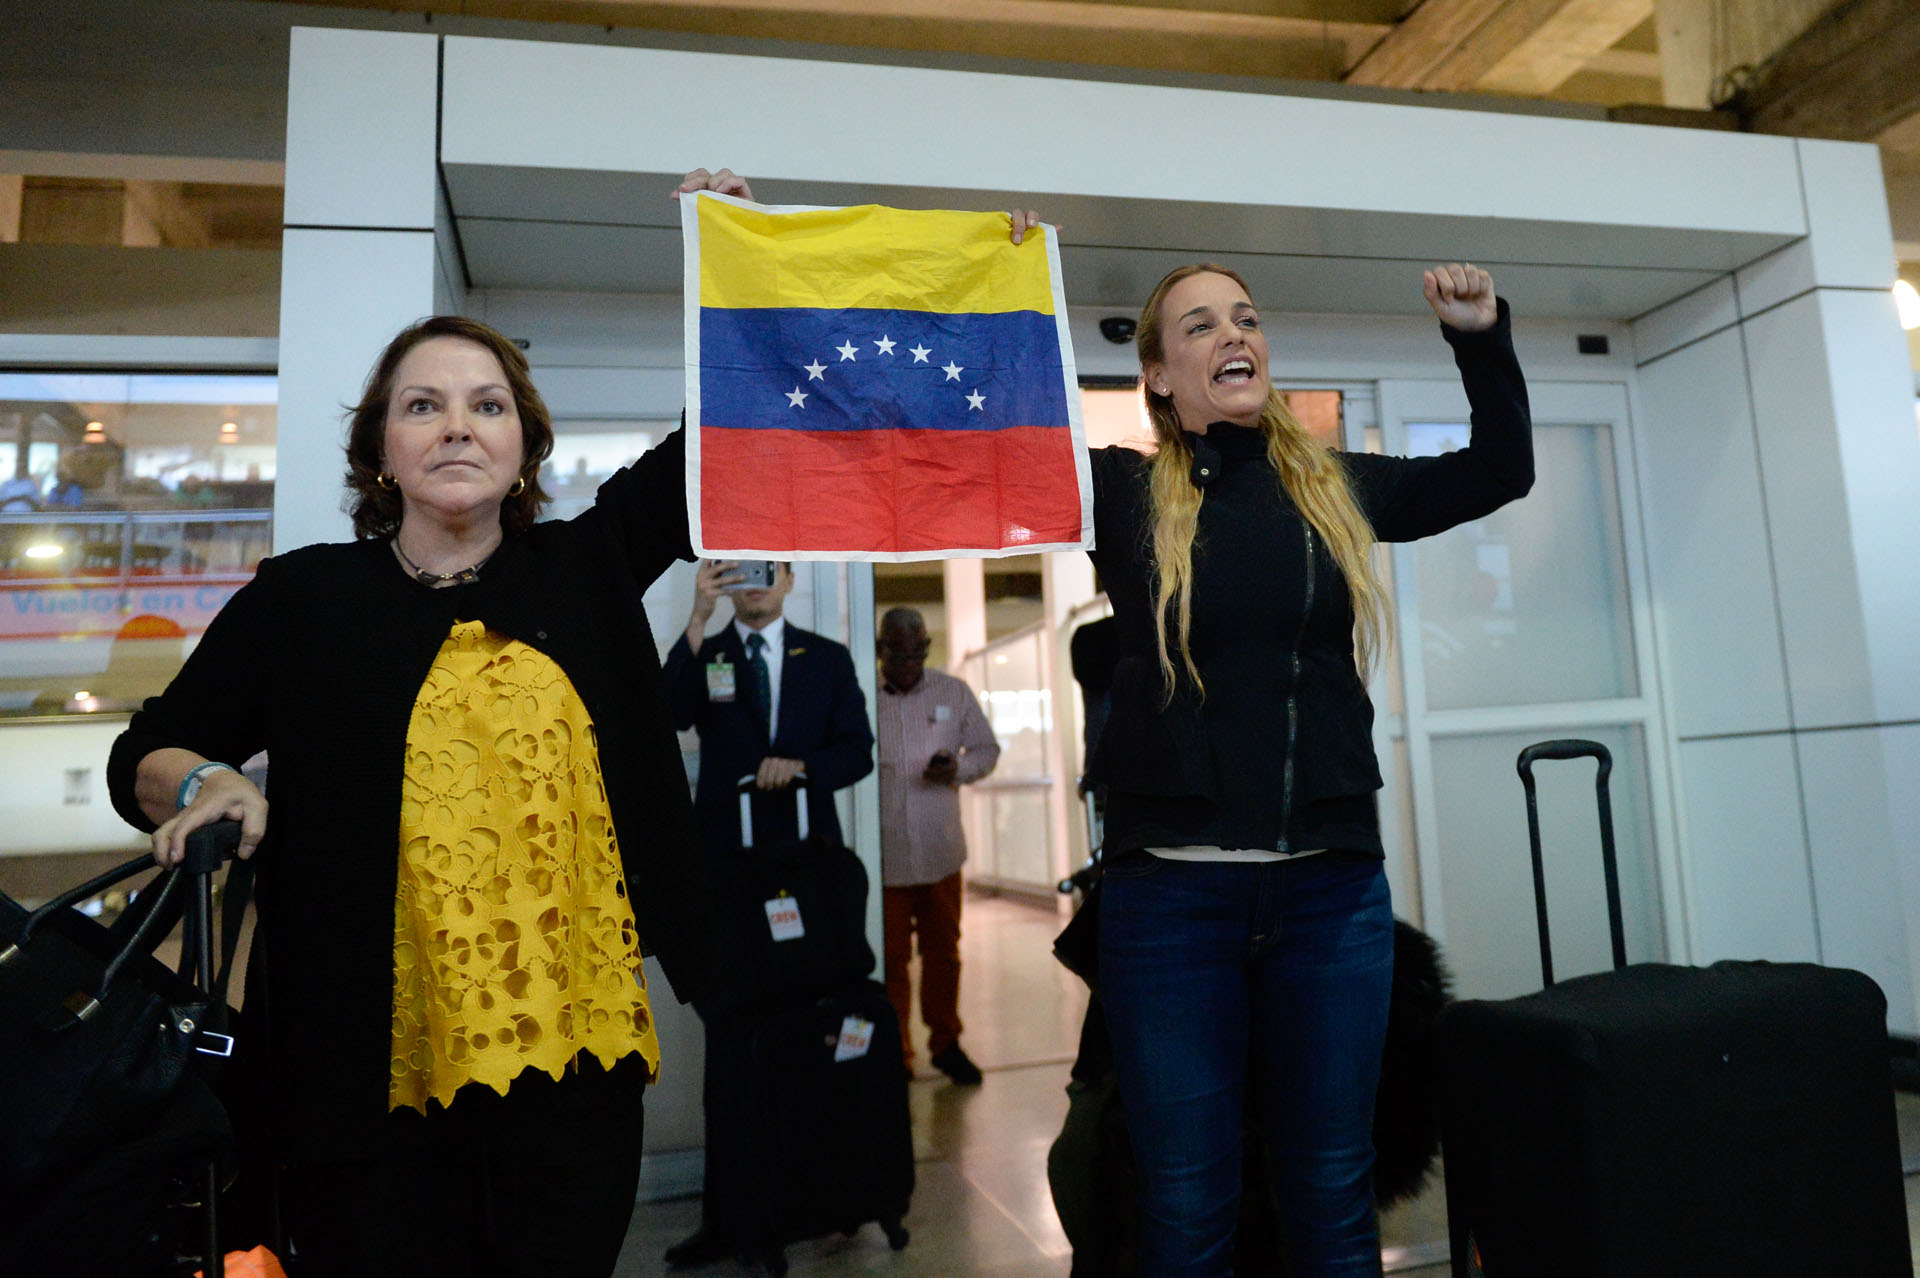 Chavismo ardido en 3, 2, 1: La llegada de Tintori y Capriles de Ledezma a Venezuela tras hablar con Trump (FOTOS)